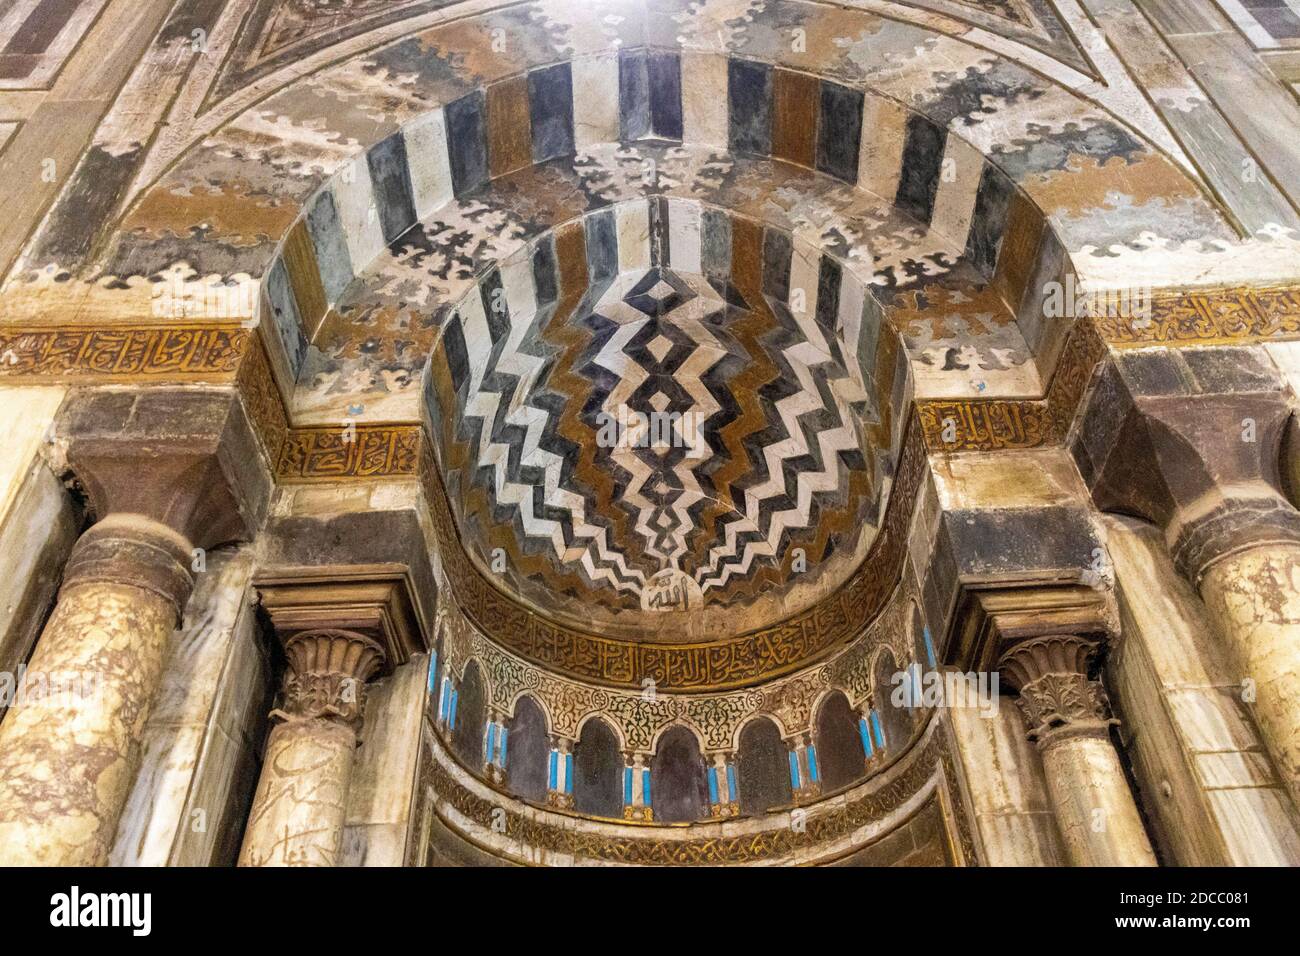 Complexe du Sultan Hasan, le Caire, Egypte, intérieur du mausolée, détail de mihrab incrusté Banque D'Images